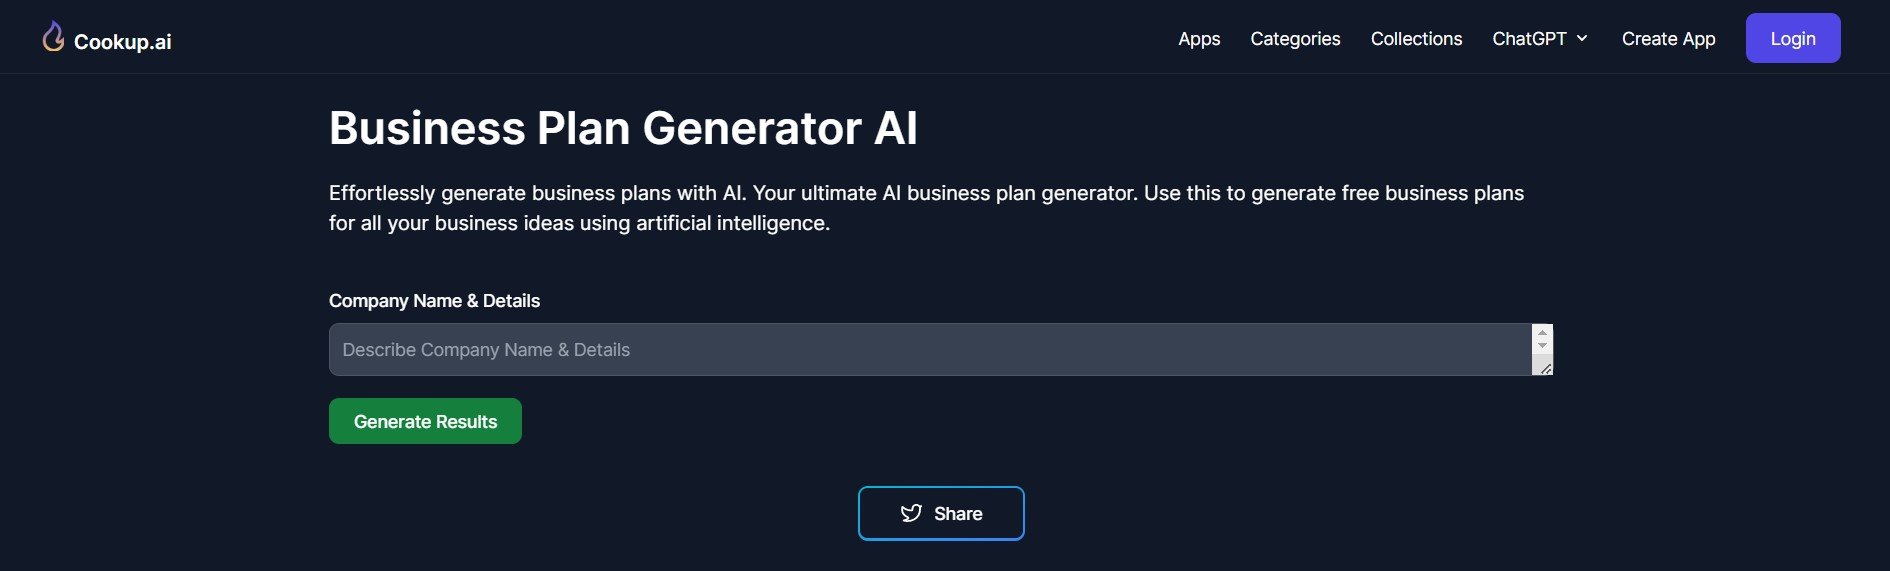 Pagina del generatore di piani aziendali AI di Cookup